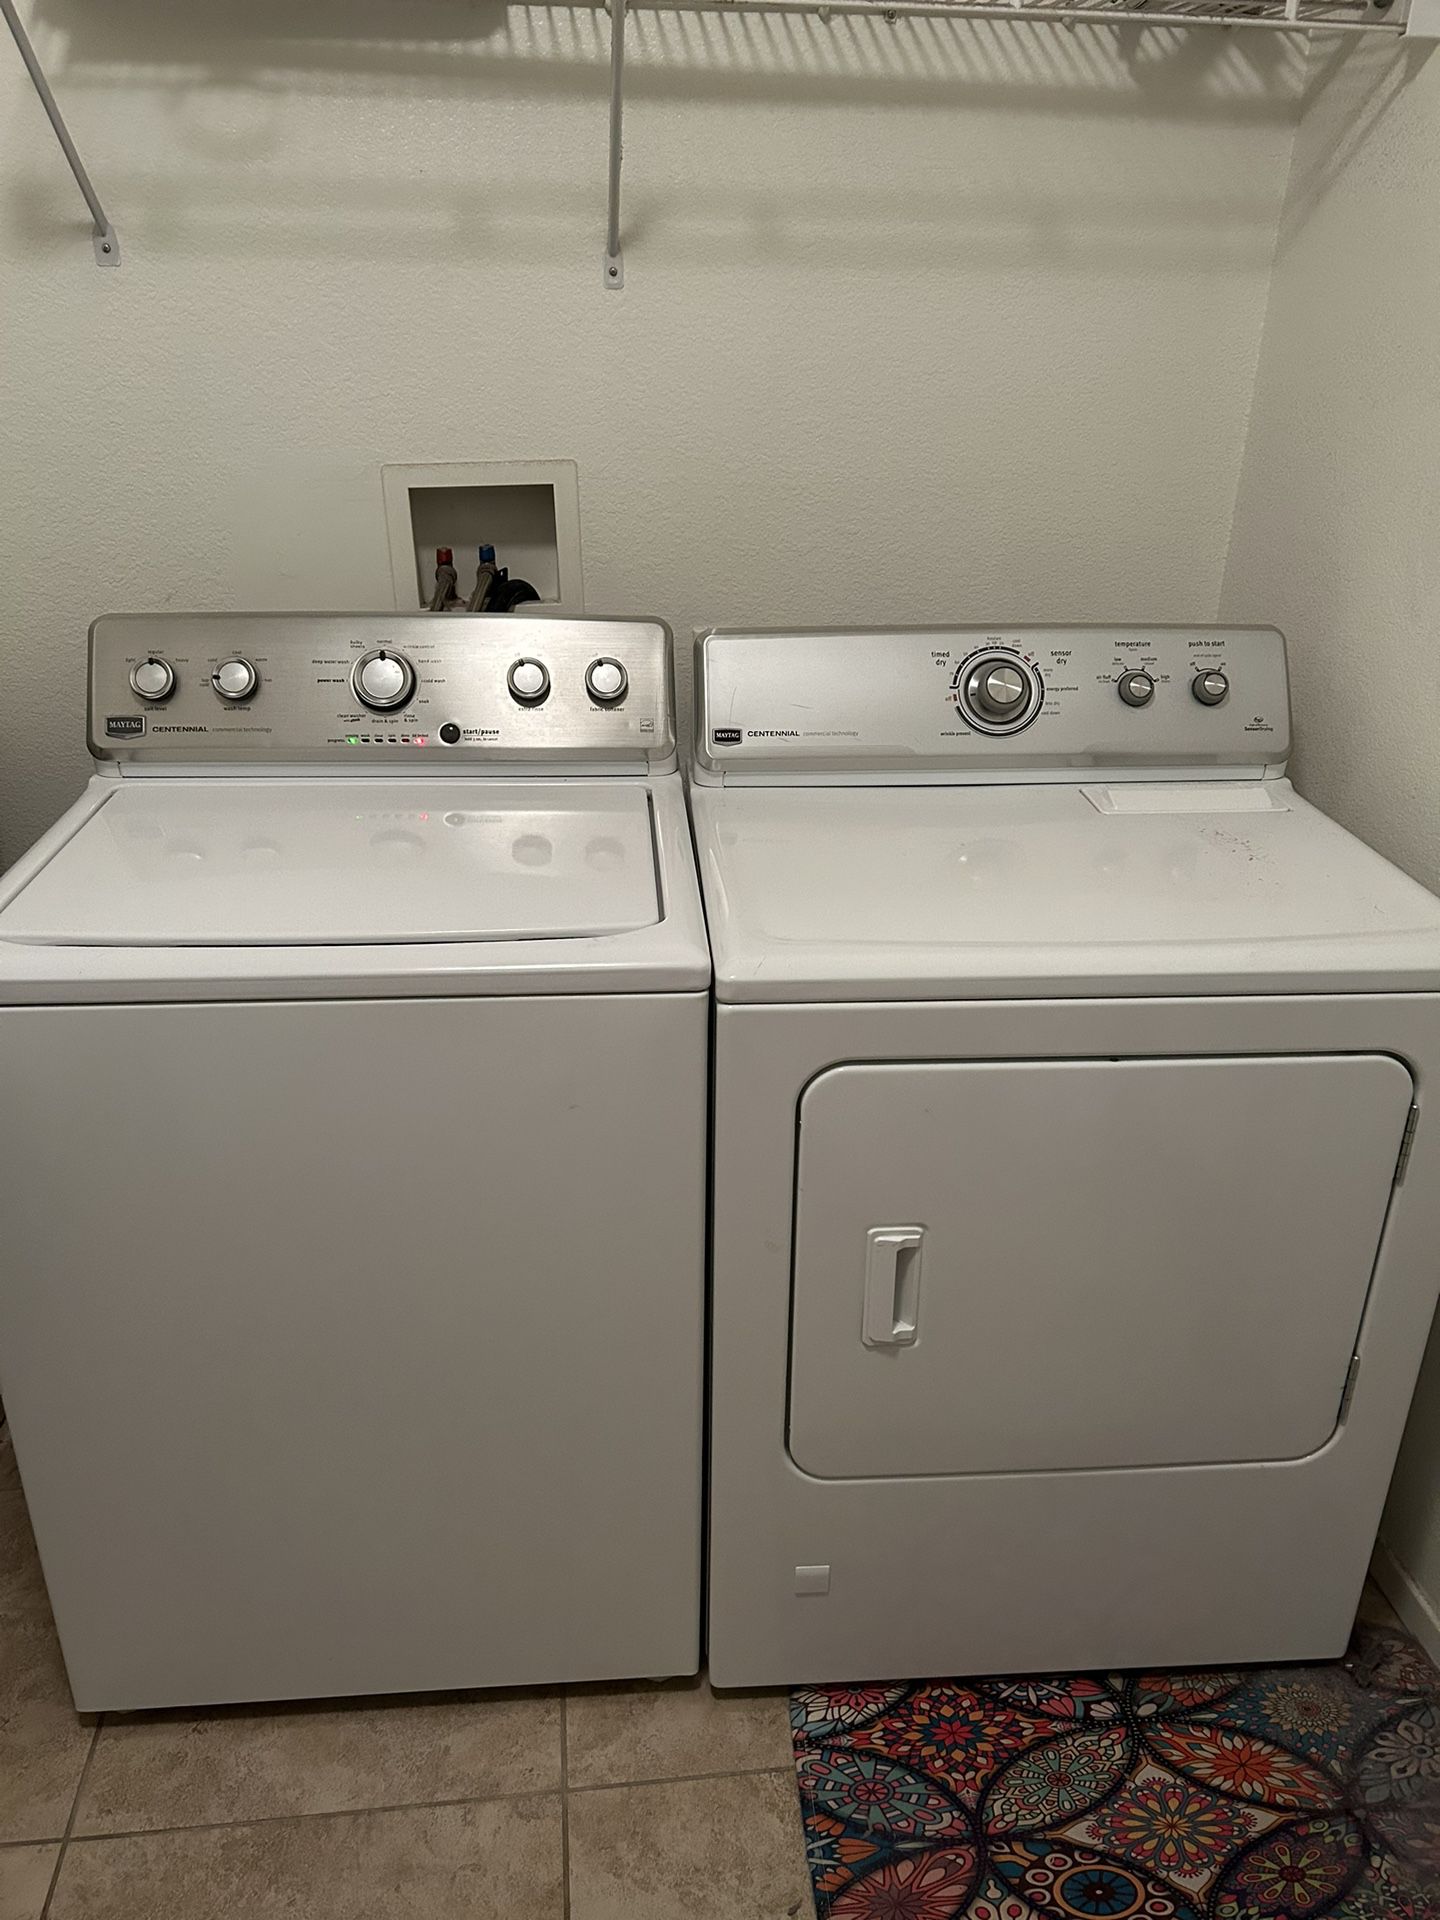 Maytag Centennial Washer-Dryer Set